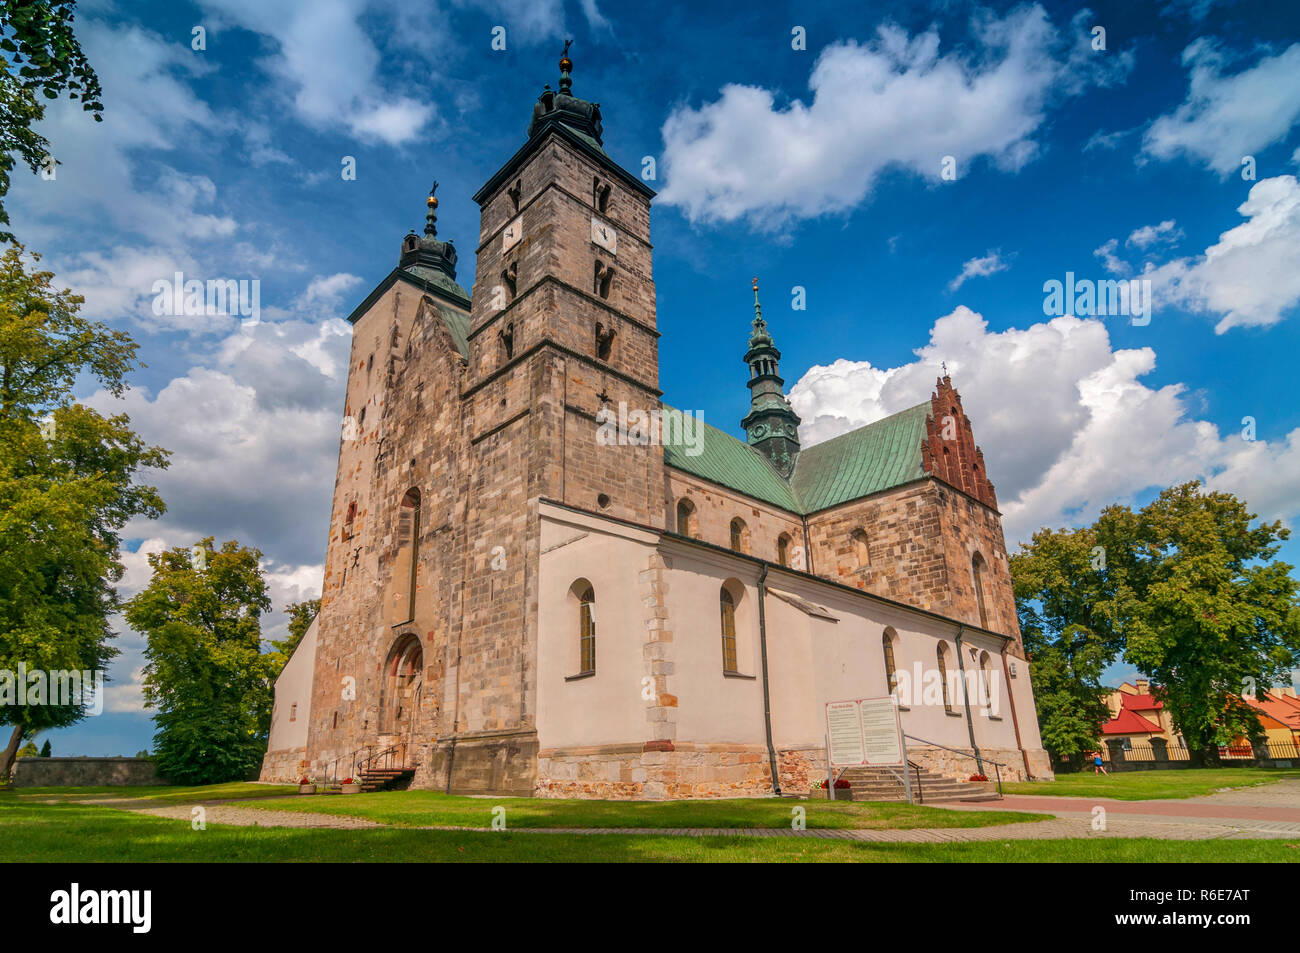 Die Stiftskirche St. Martin in Opatow, die romanische Kirche des Heiligen Martin von Tours in Opatow, in Swietokrzyskie Westpommern in Pol Stockfoto